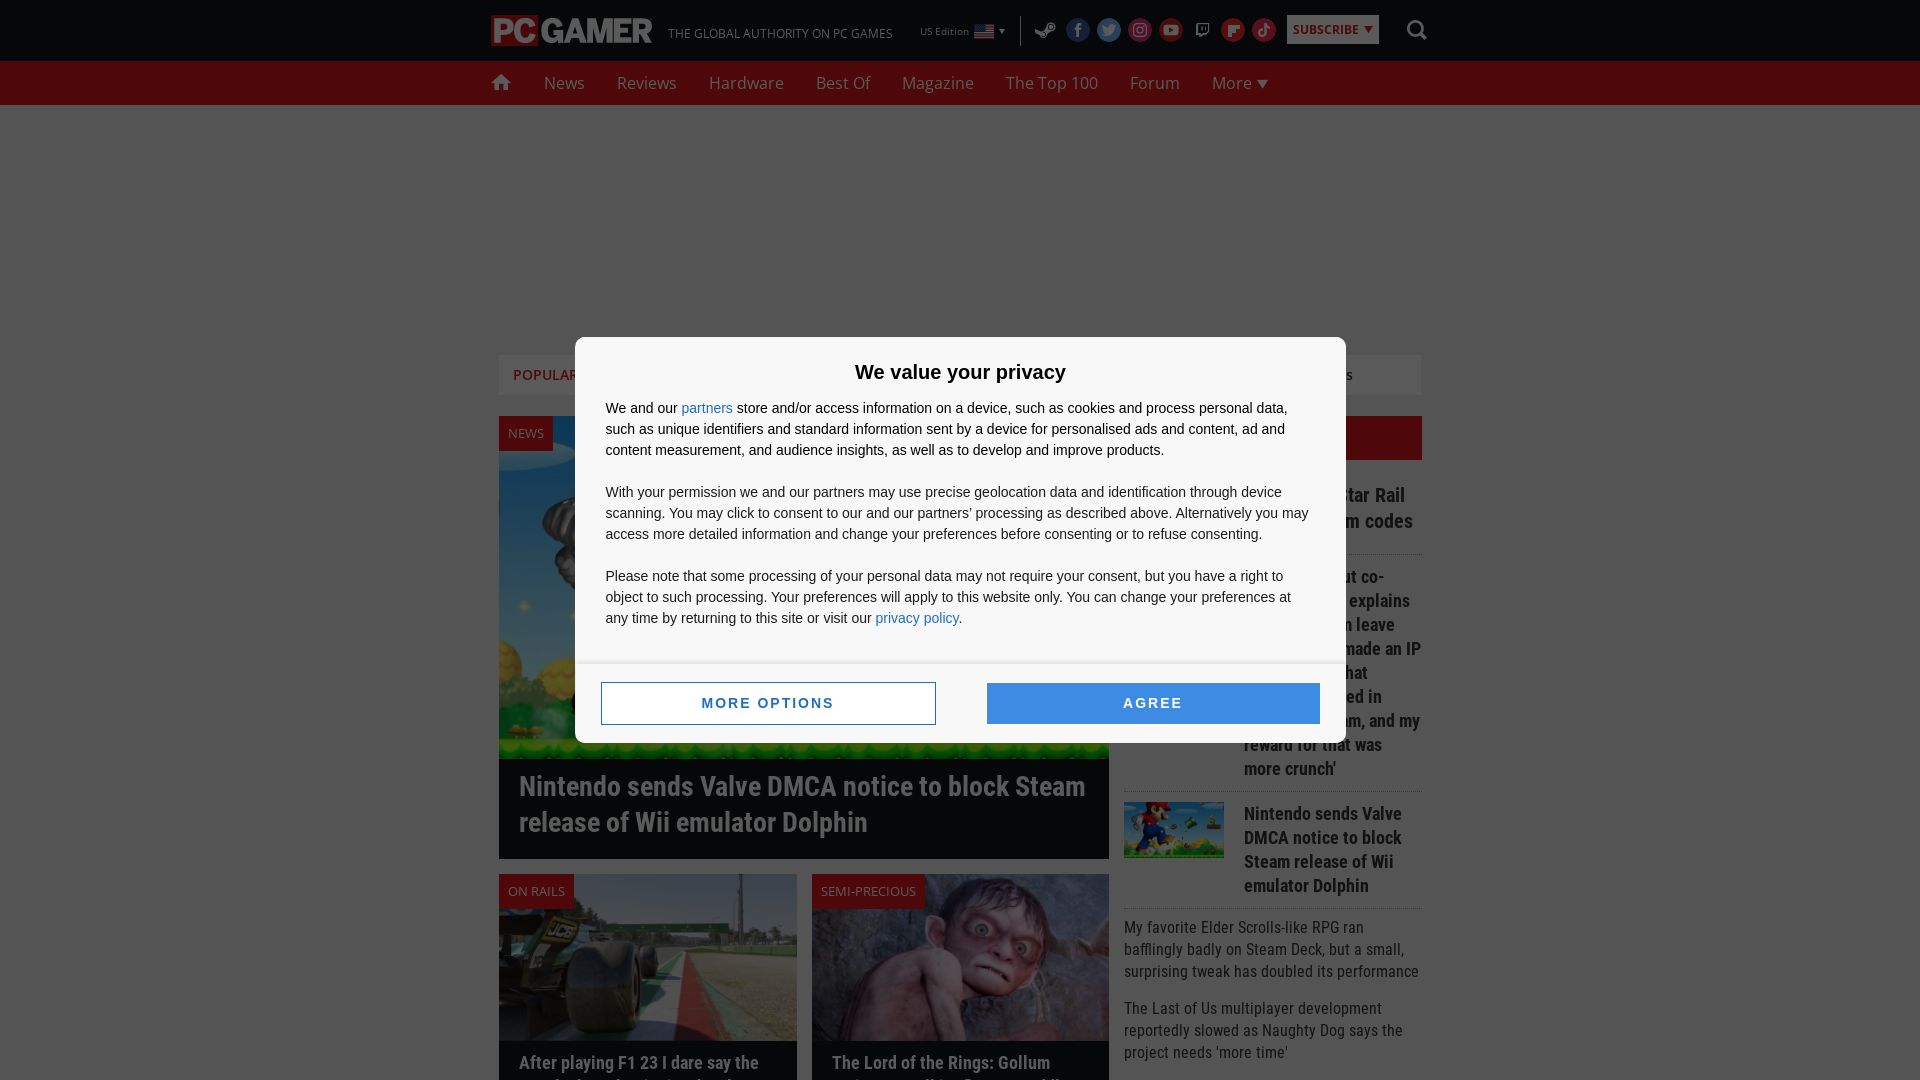 Stato del sito web pcgamer.com è   ONLINE